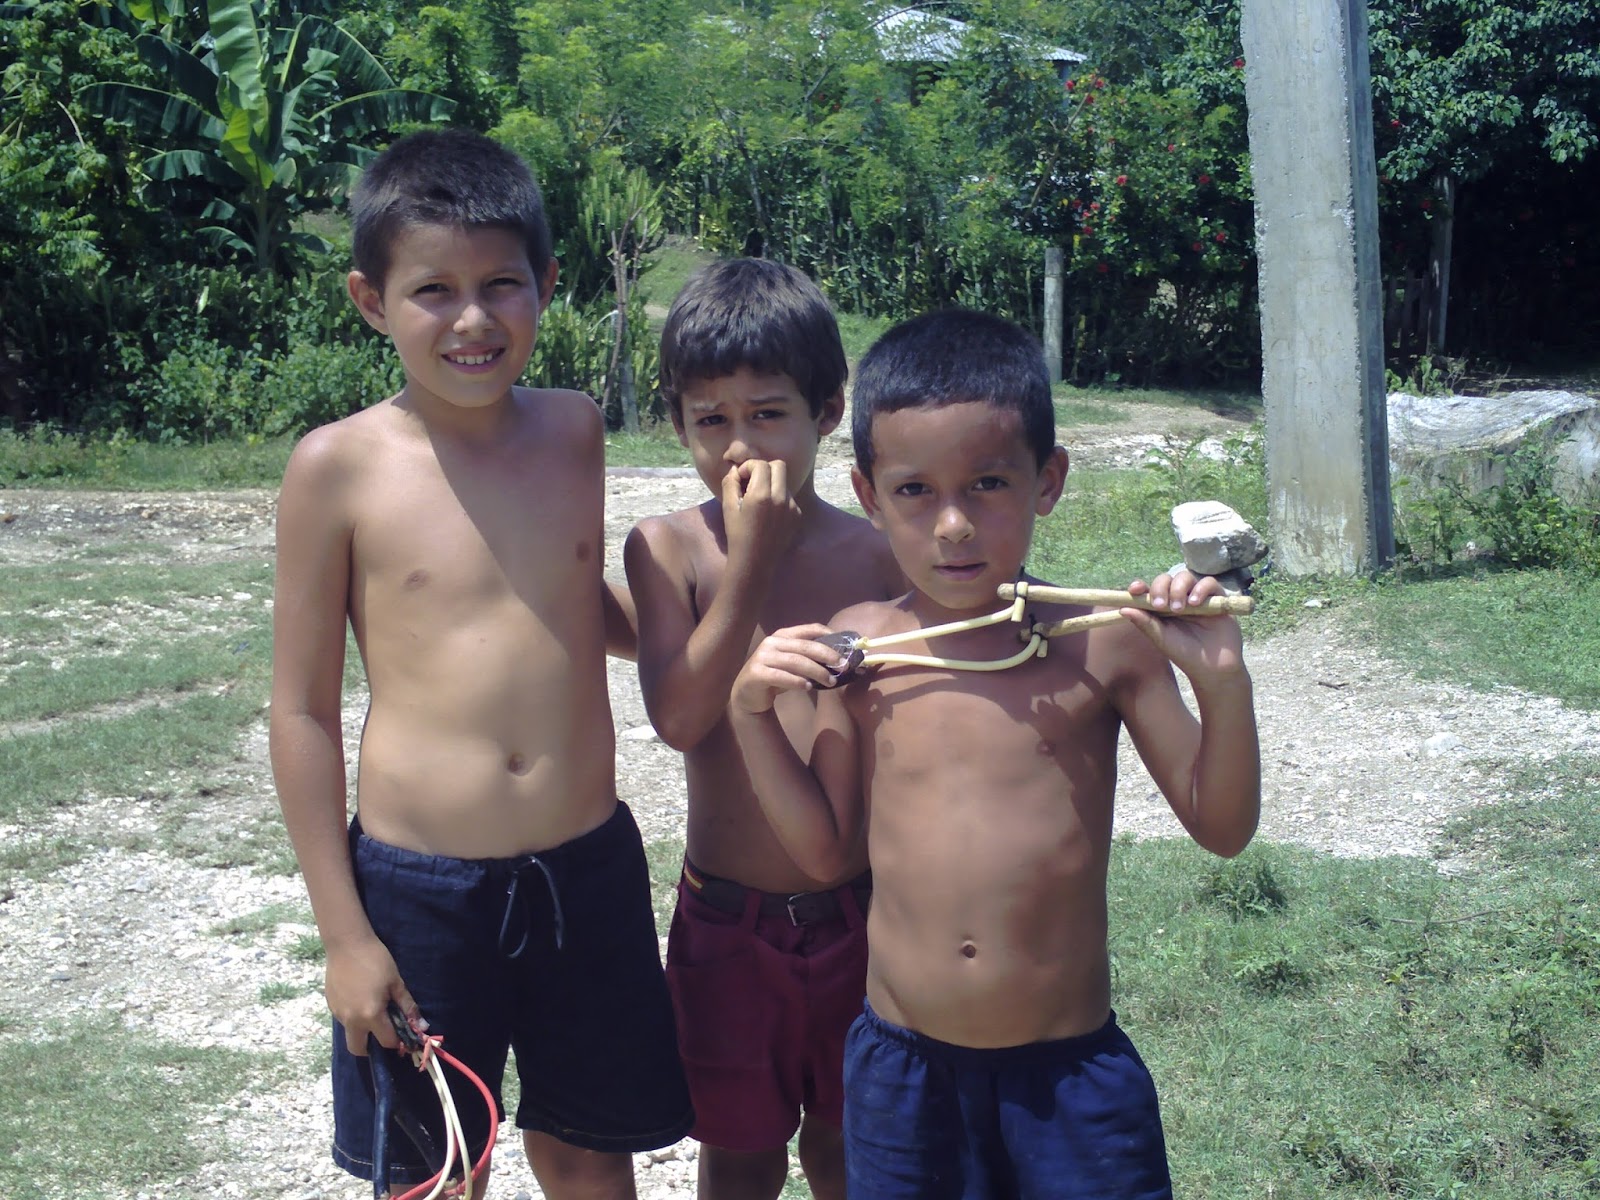 Tirapiedras, el "arma letal" en la infancia de los niños cubanos